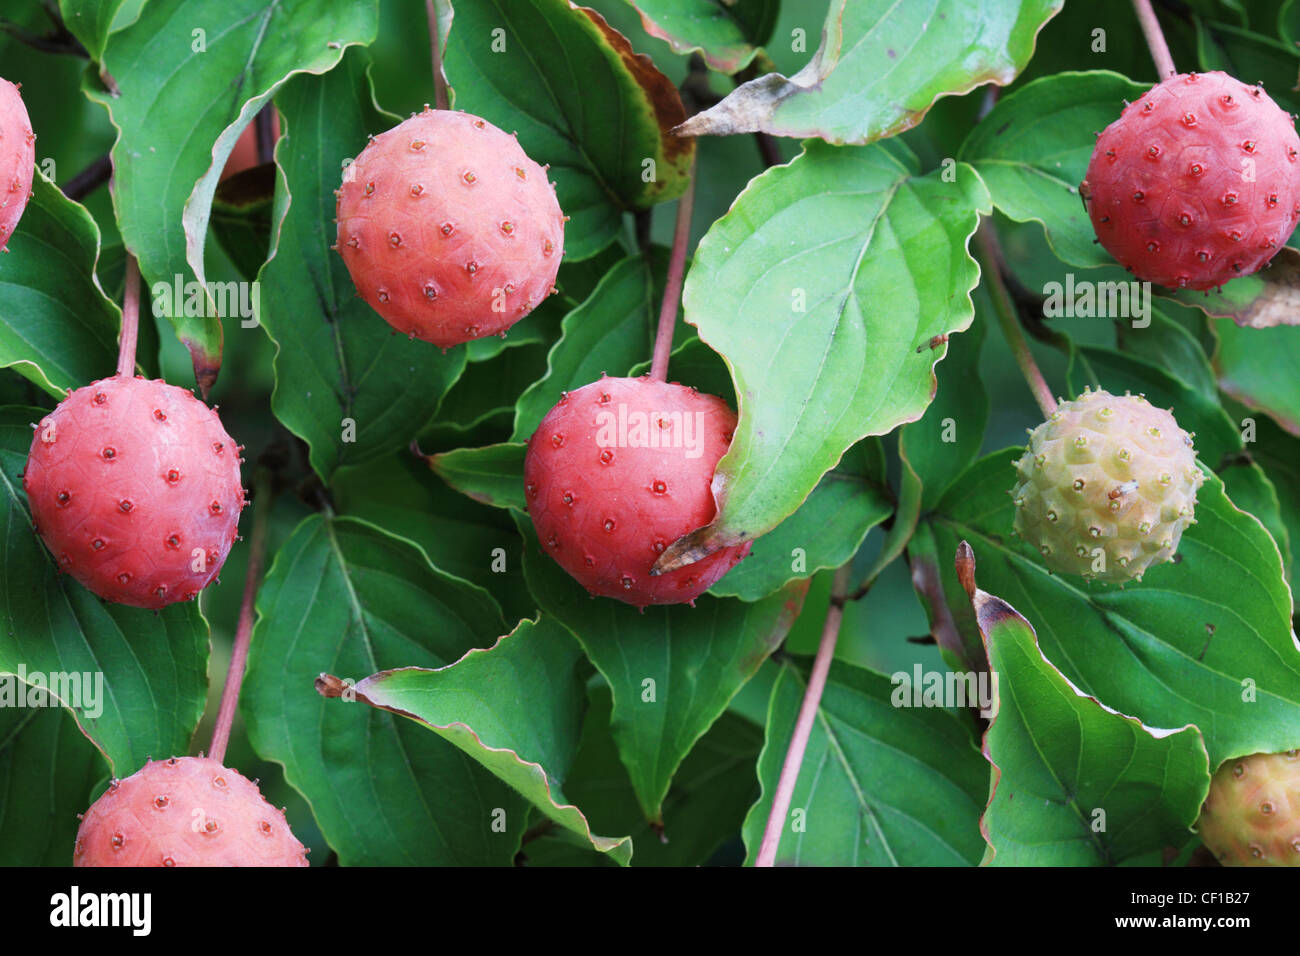 image of kousa dogwood fruit and leaves Stock Photo